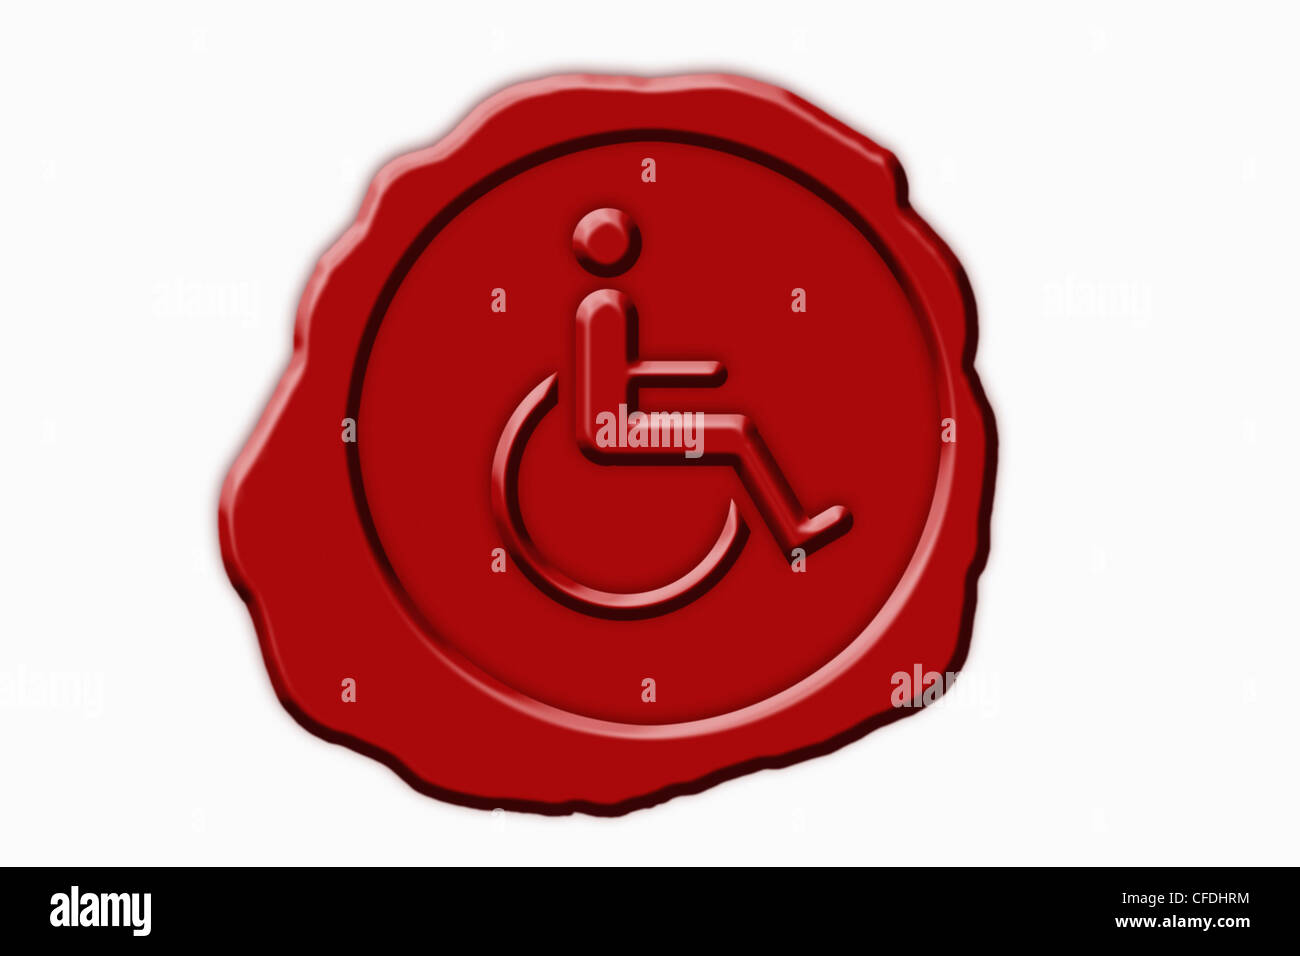 Dettaglio foto di un sigillo rosso con una sedia a rotelle il simbolo in mezzo Foto Stock